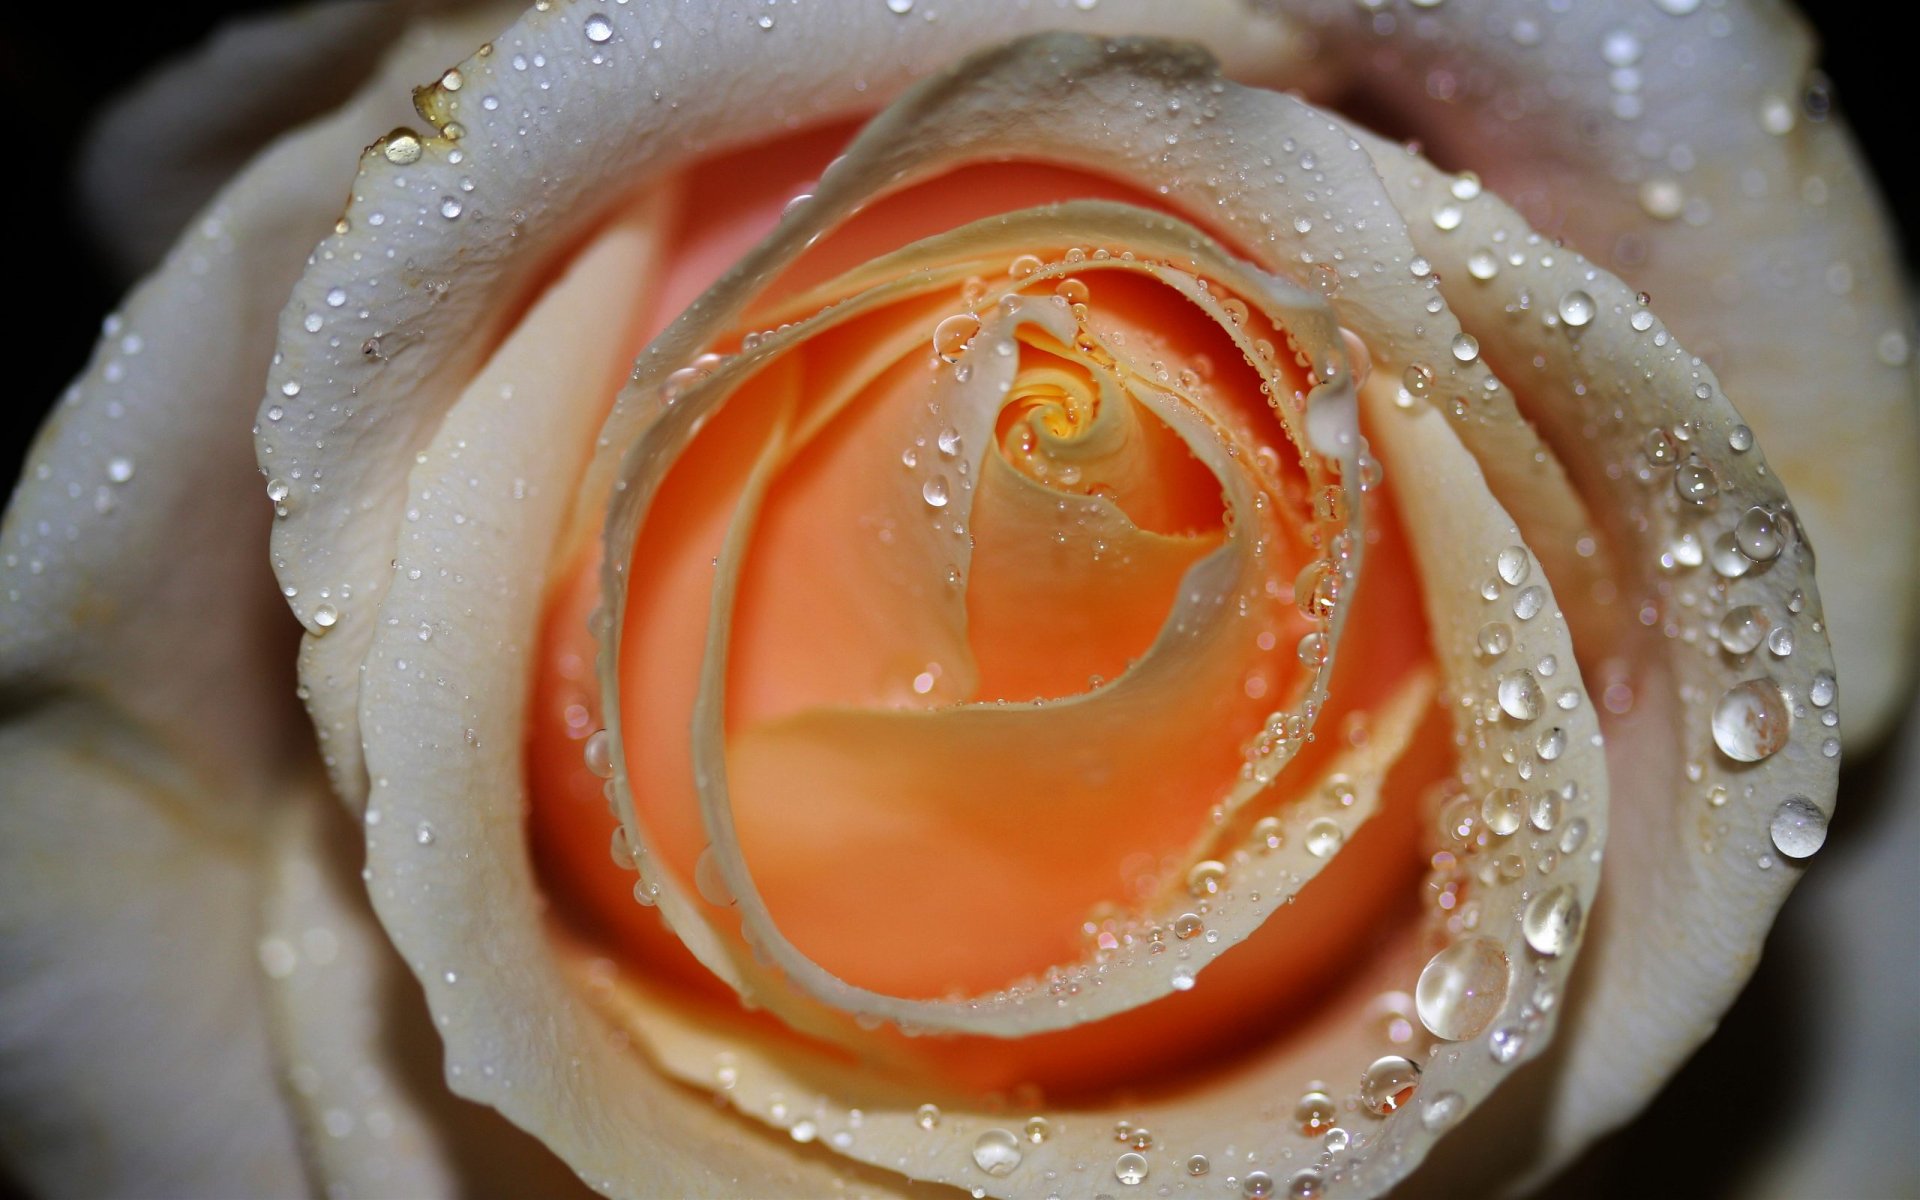 Nature Rose HD Wallpaper